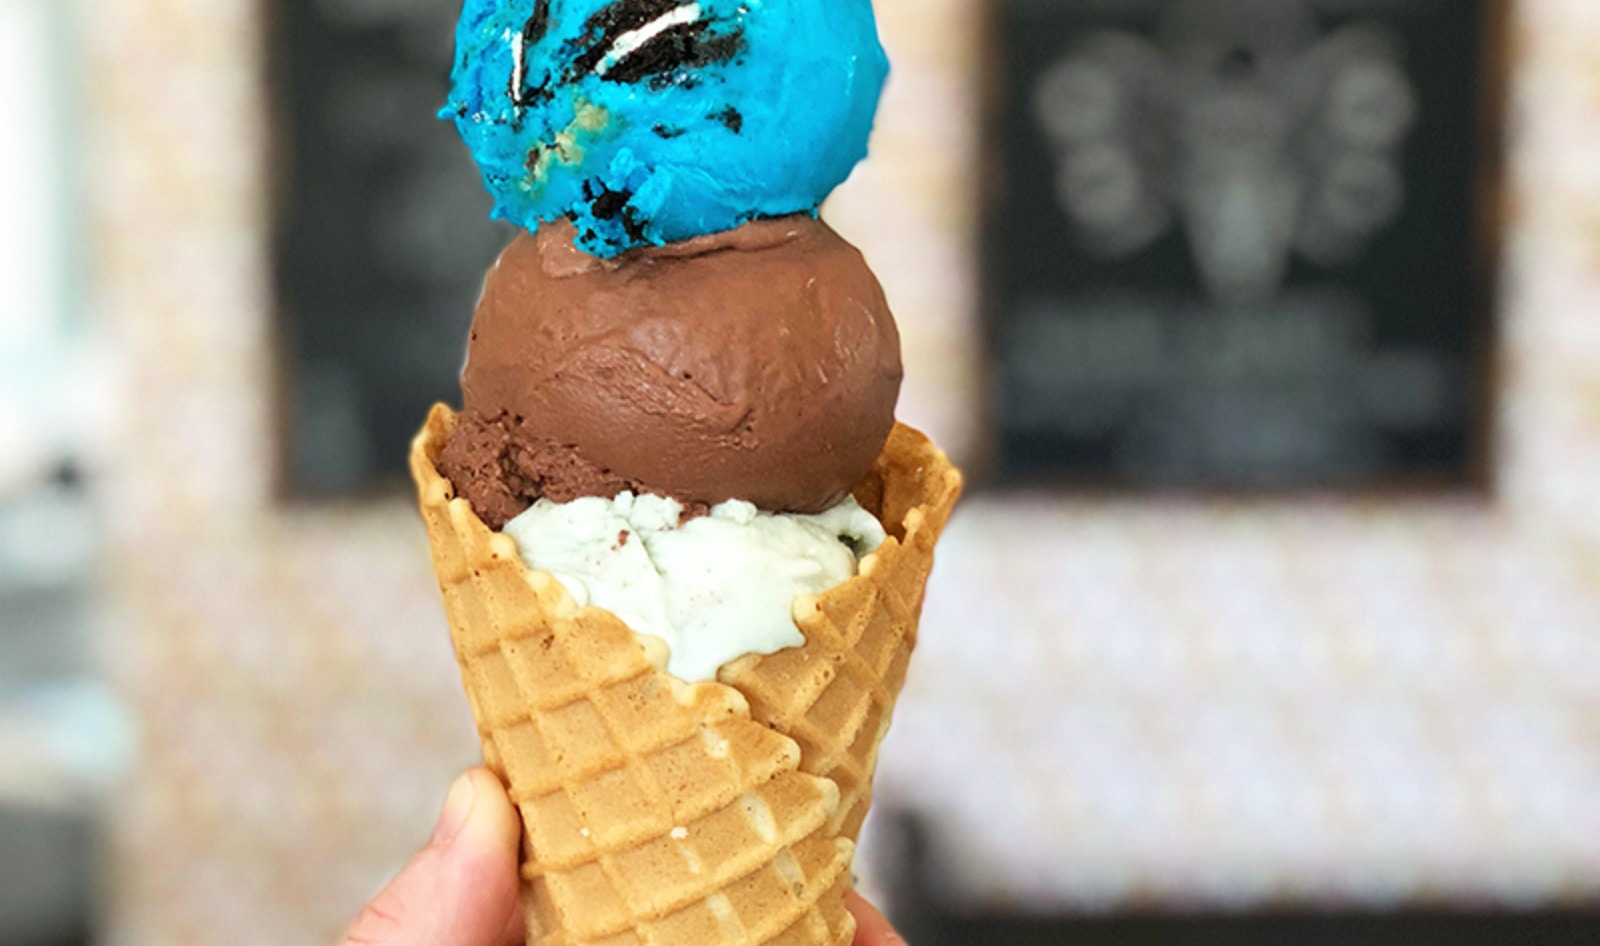 Minneapolis Crepe and Ice Cream Shop Goes Vegan